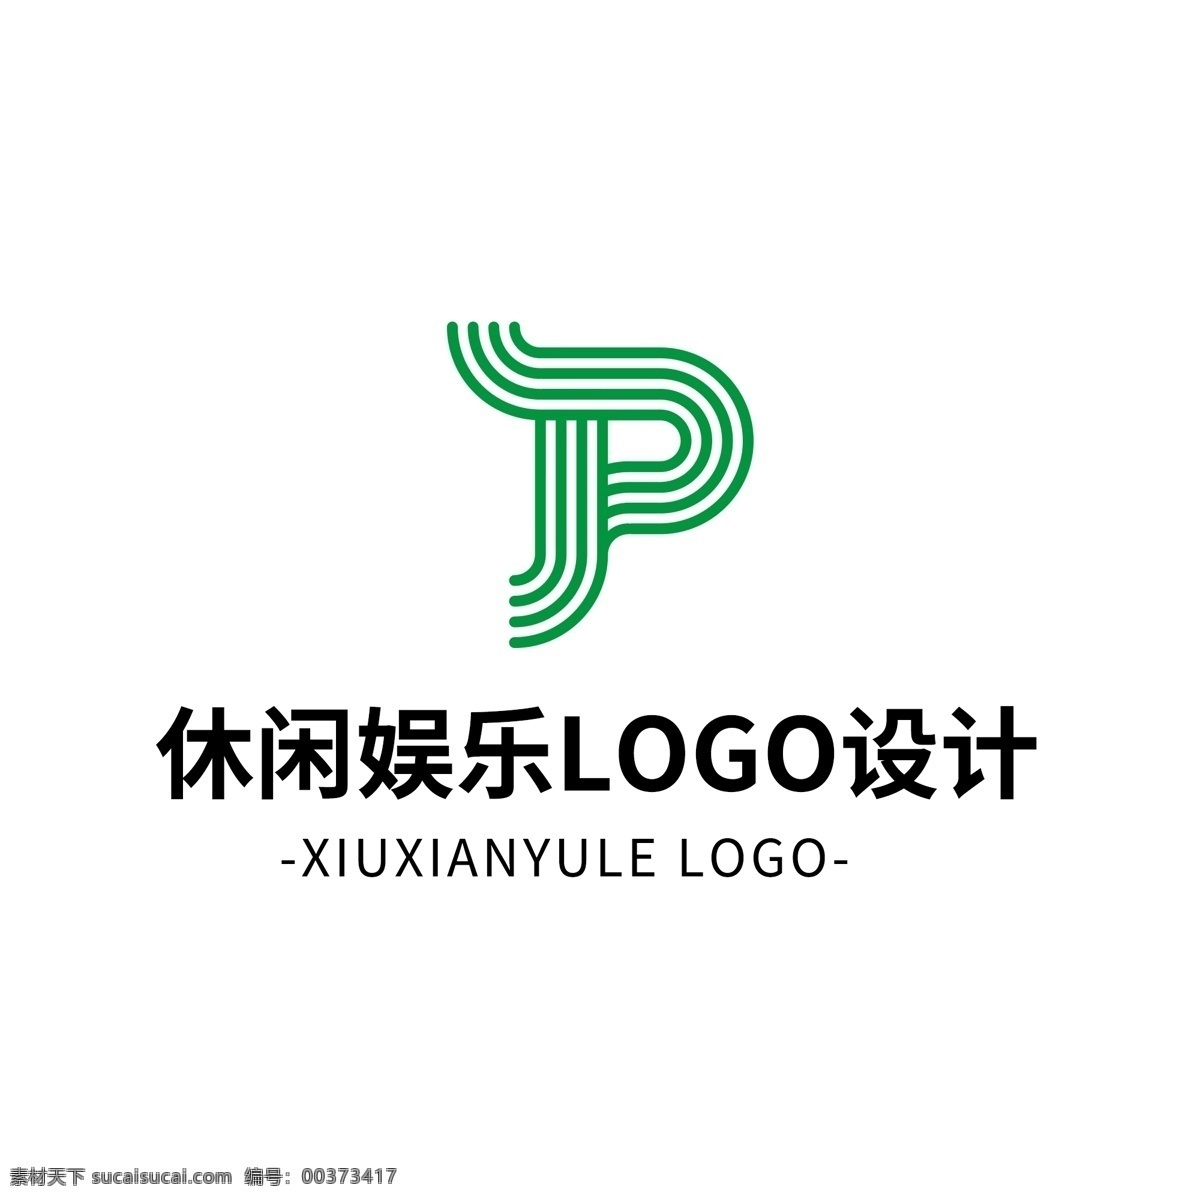 简约 大气 创意 休闲 娱乐 logo 标志设计 图形 矢量 绿色